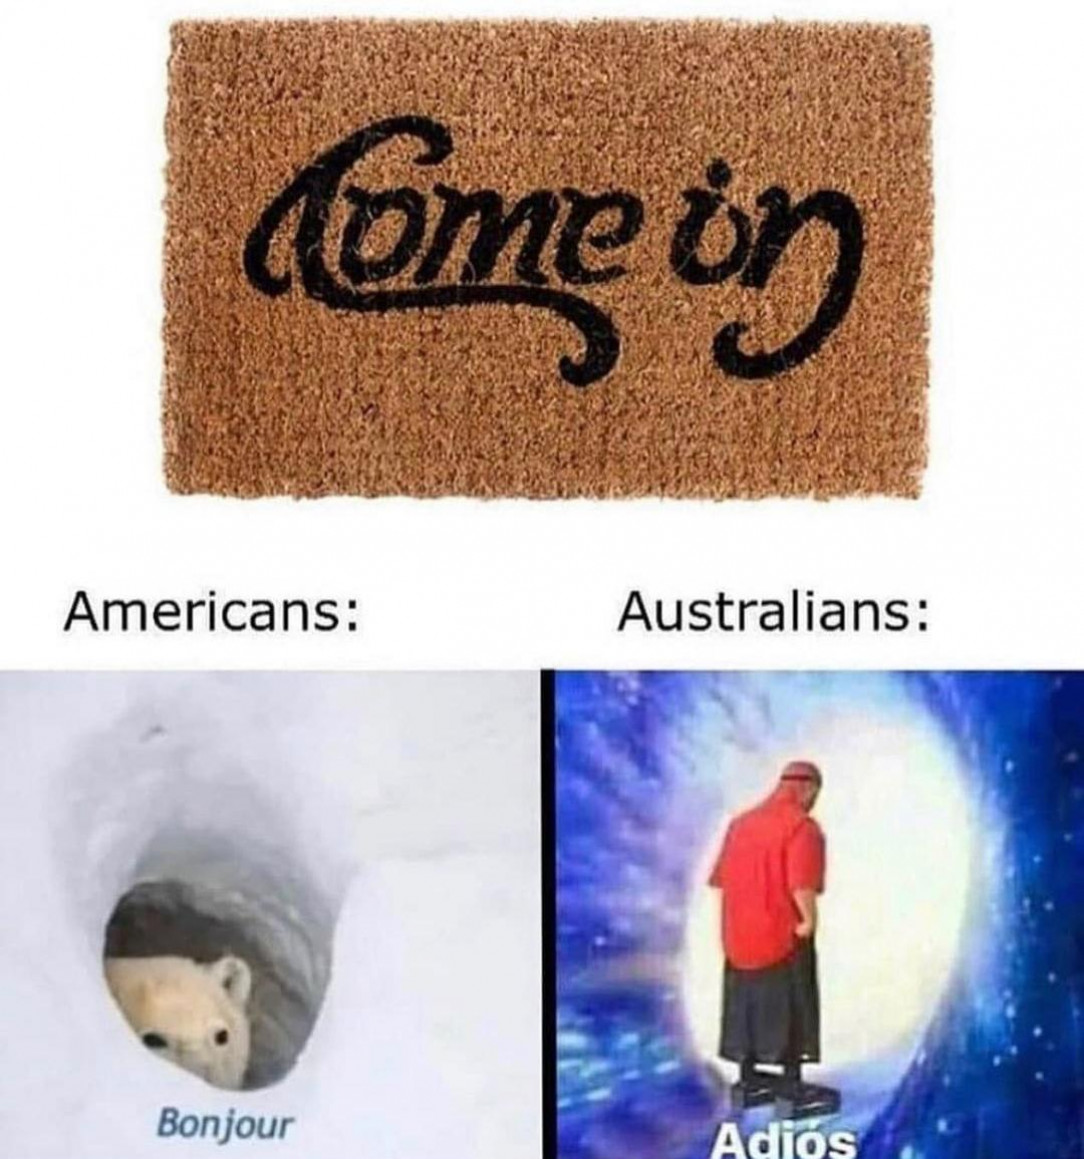 Poor Australians